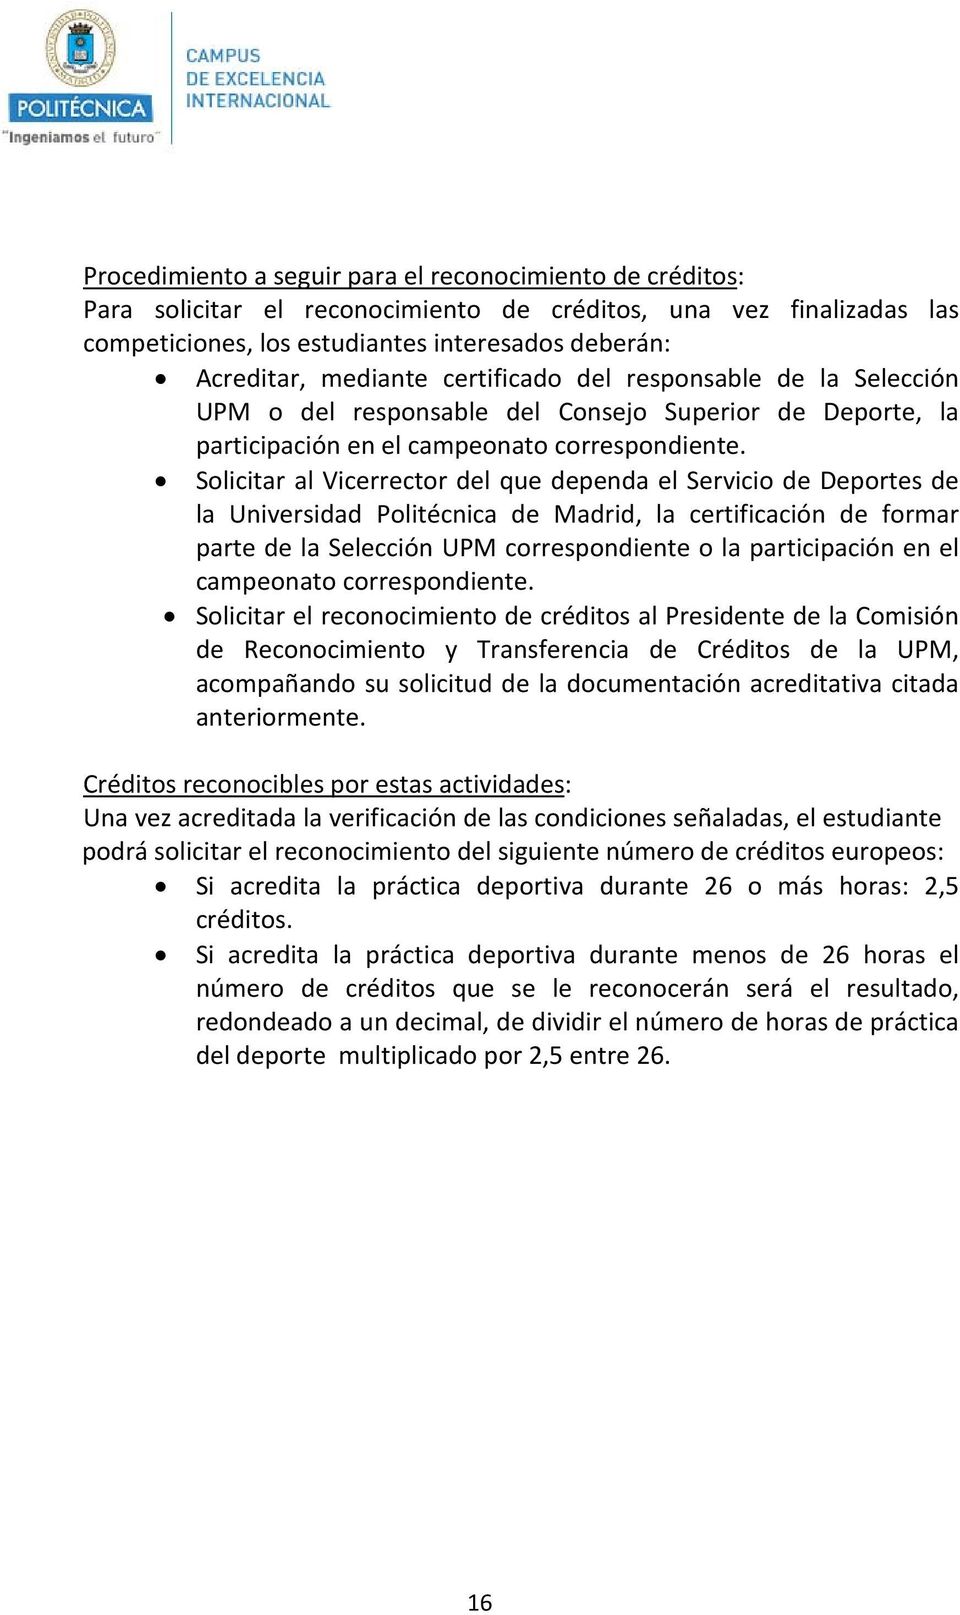 Solicitar al Vicerrector del que dependa el Servicio de Deportes de la Universidad Politécnica de Madrid, la certificación de formar parte de la Selección UPM correspondiente o la participación en el